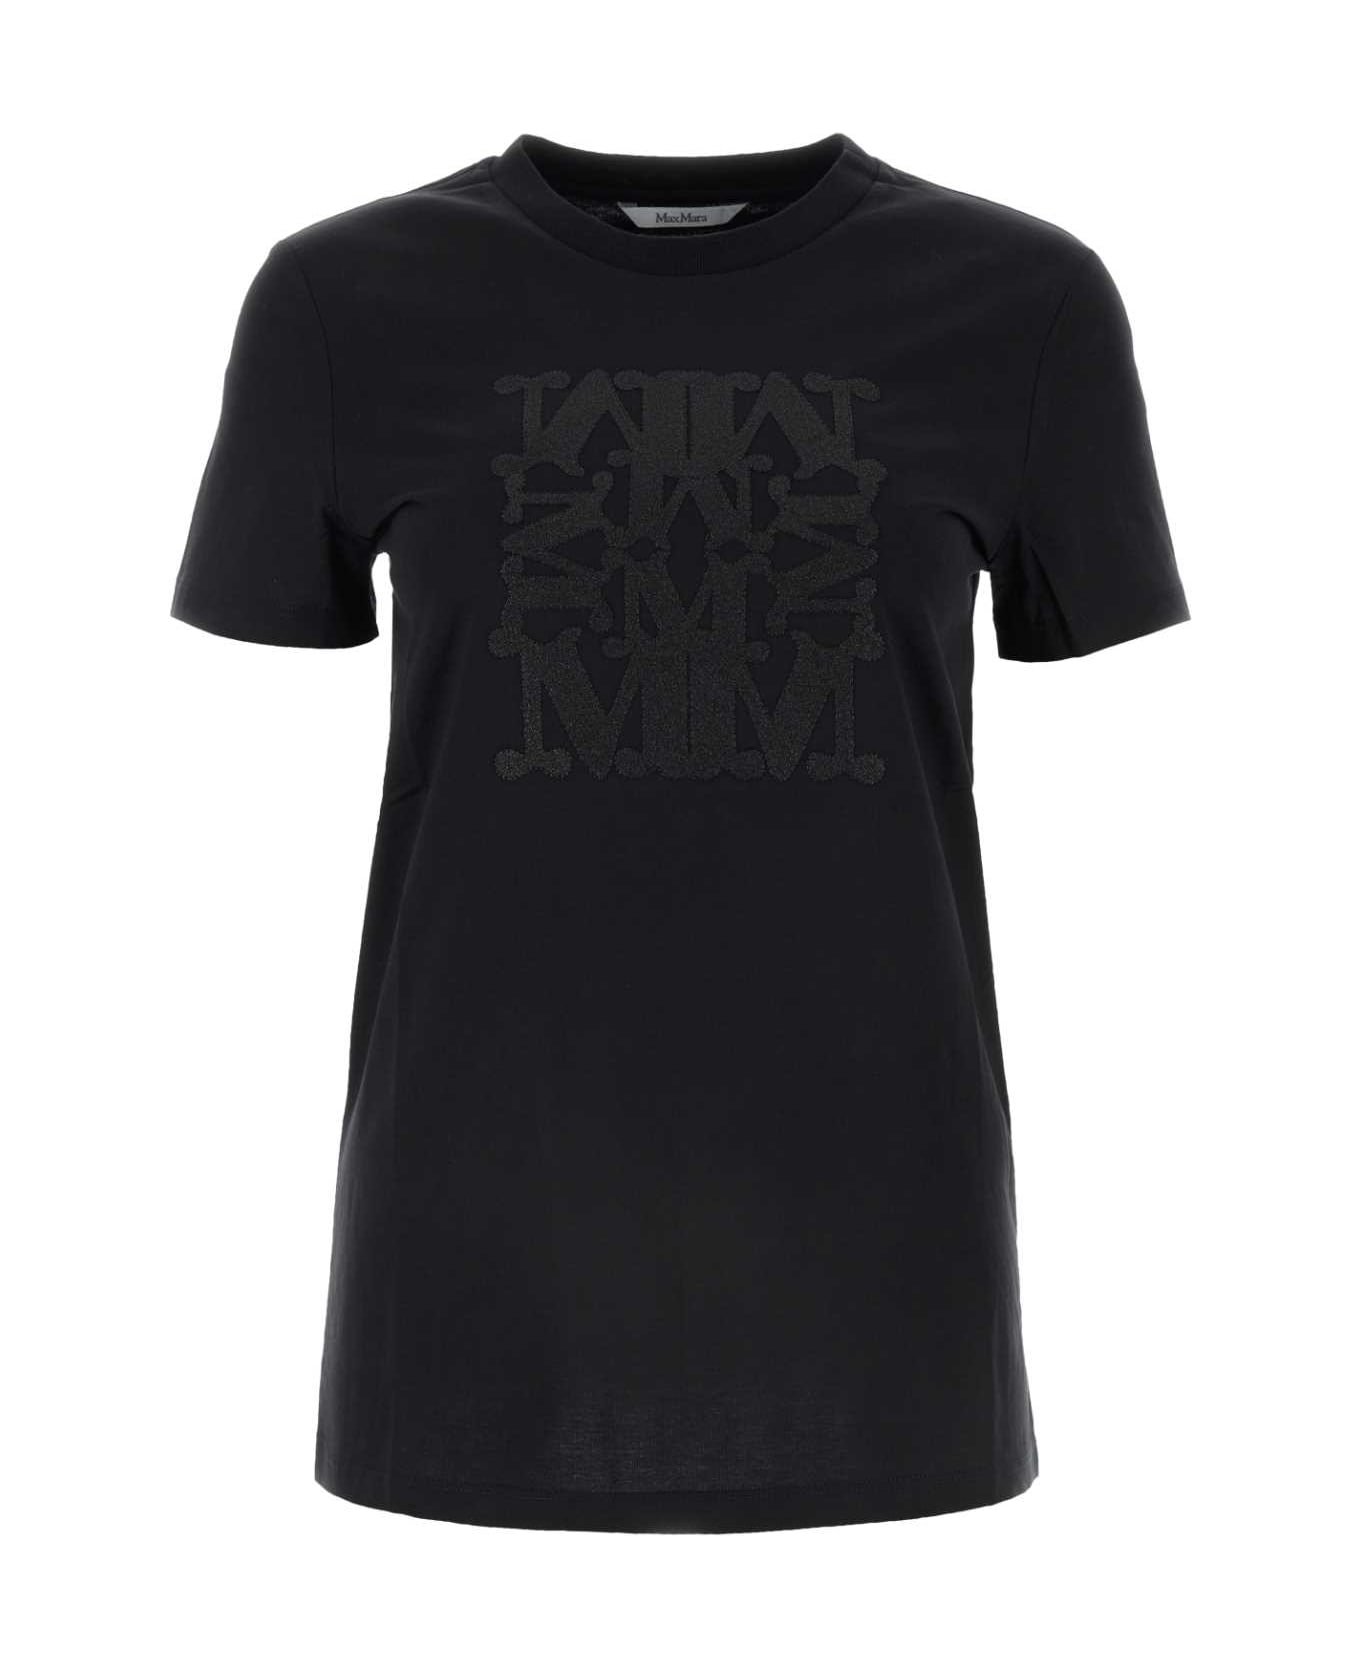 Max Mara Black Cotton Taverna T-shirt - NERO Tシャツ